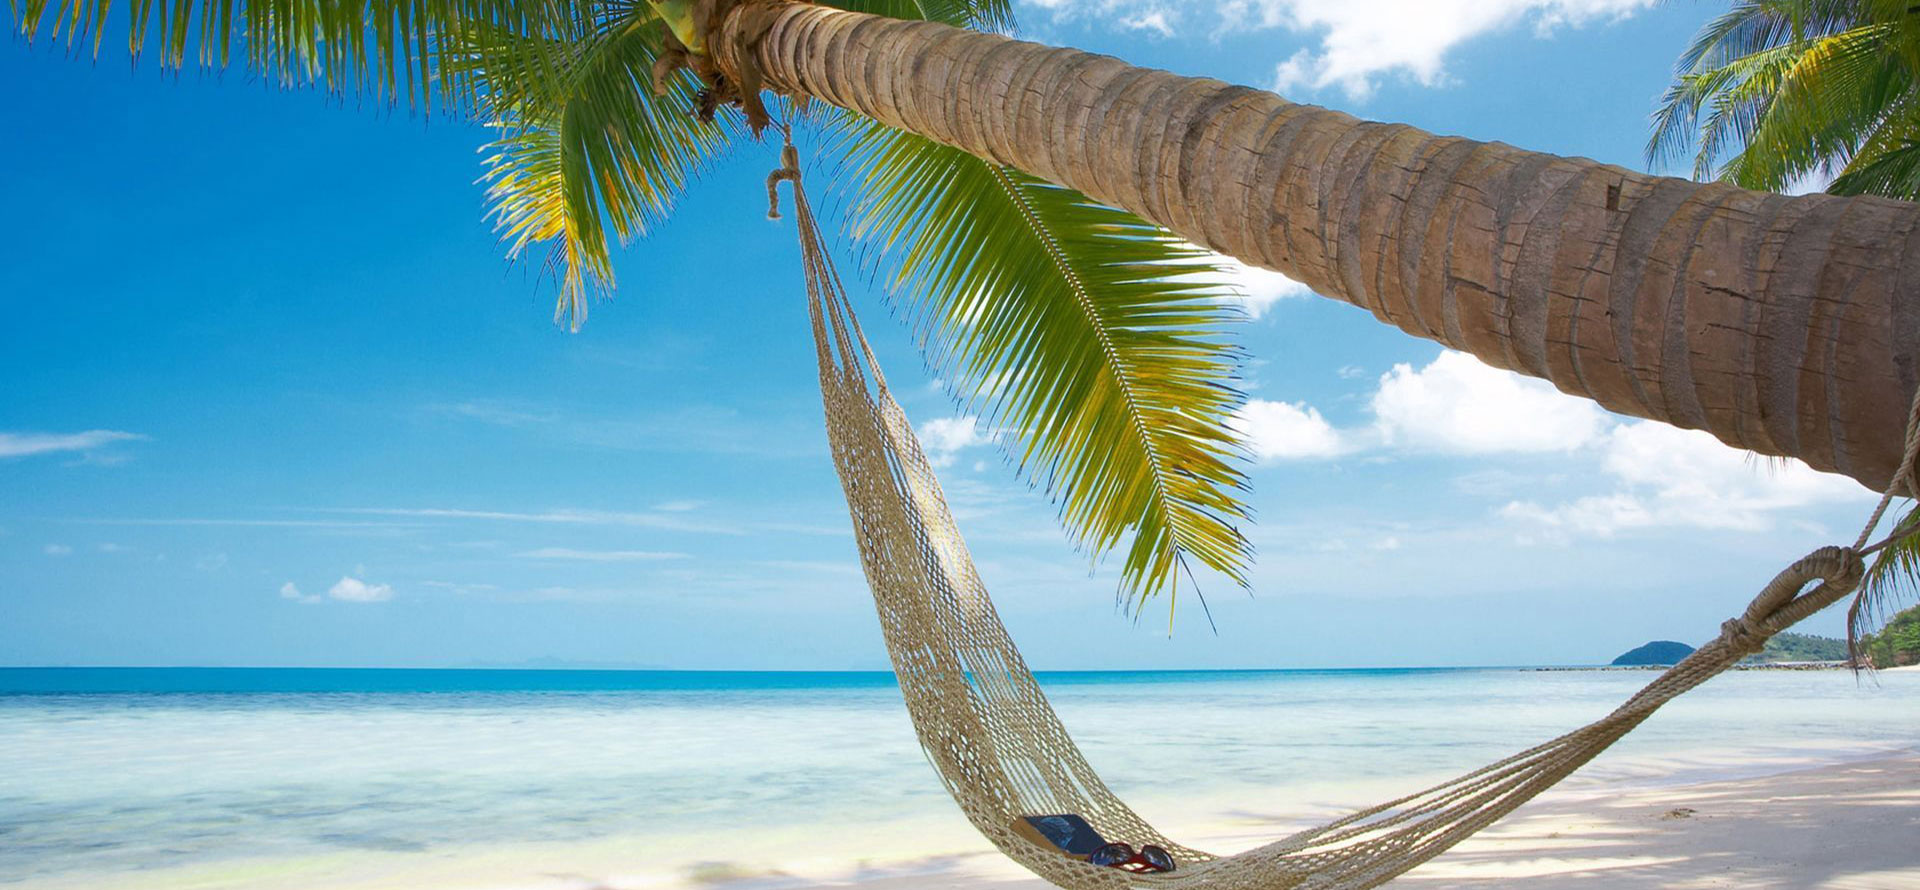 Bahamas vs puerto rico palmtree on a beach.